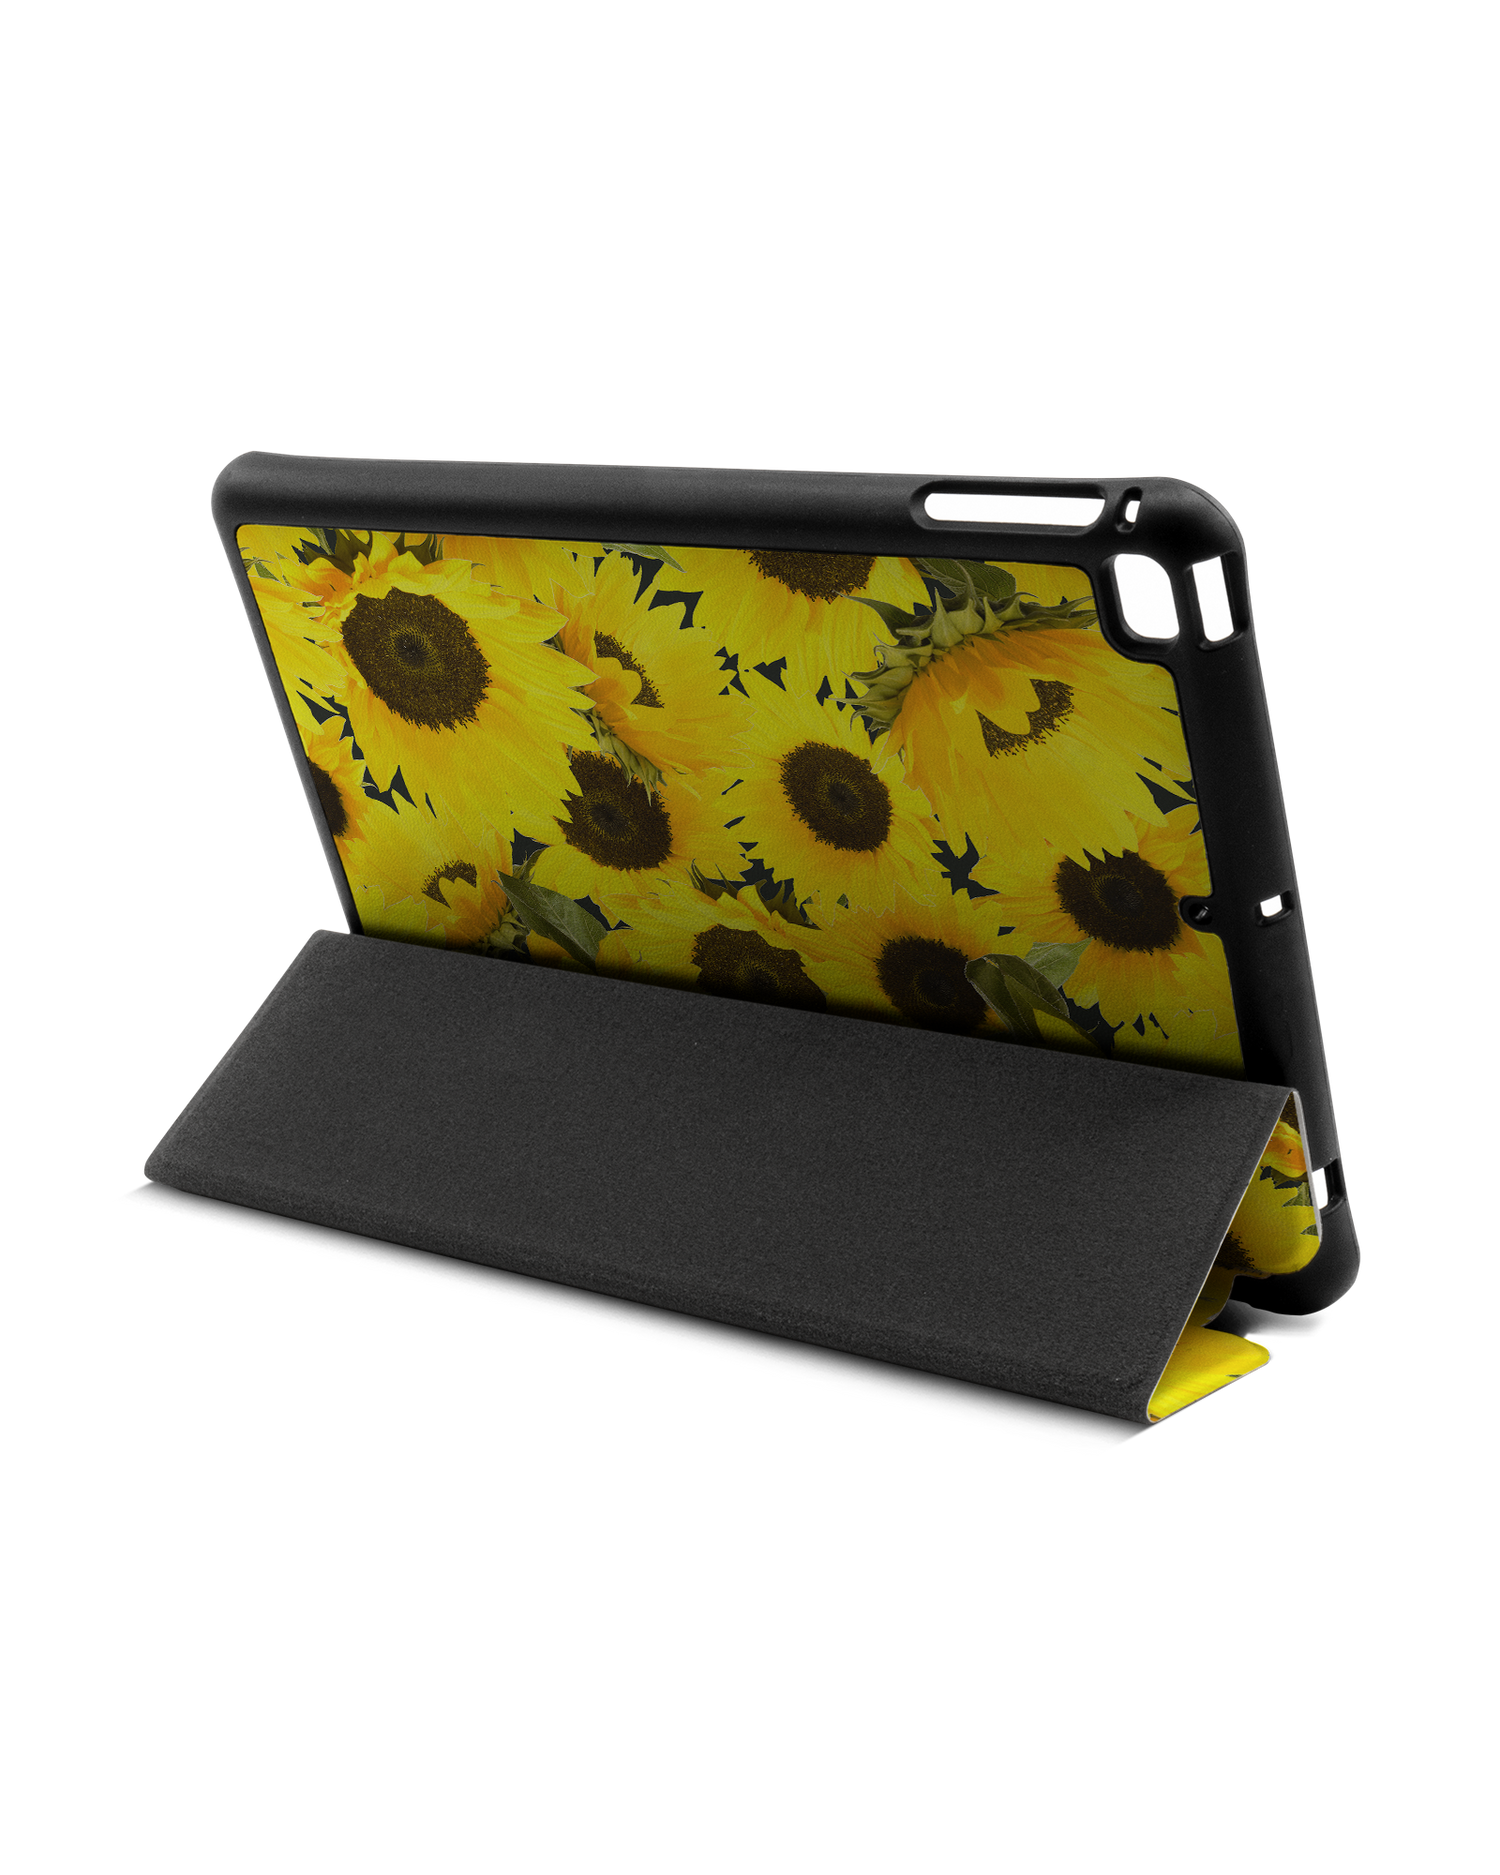 Sunflowers iPad Hülle mit Stifthalter Apple iPad mini 5 (2019): Aufgestellt im Querformat von hinten